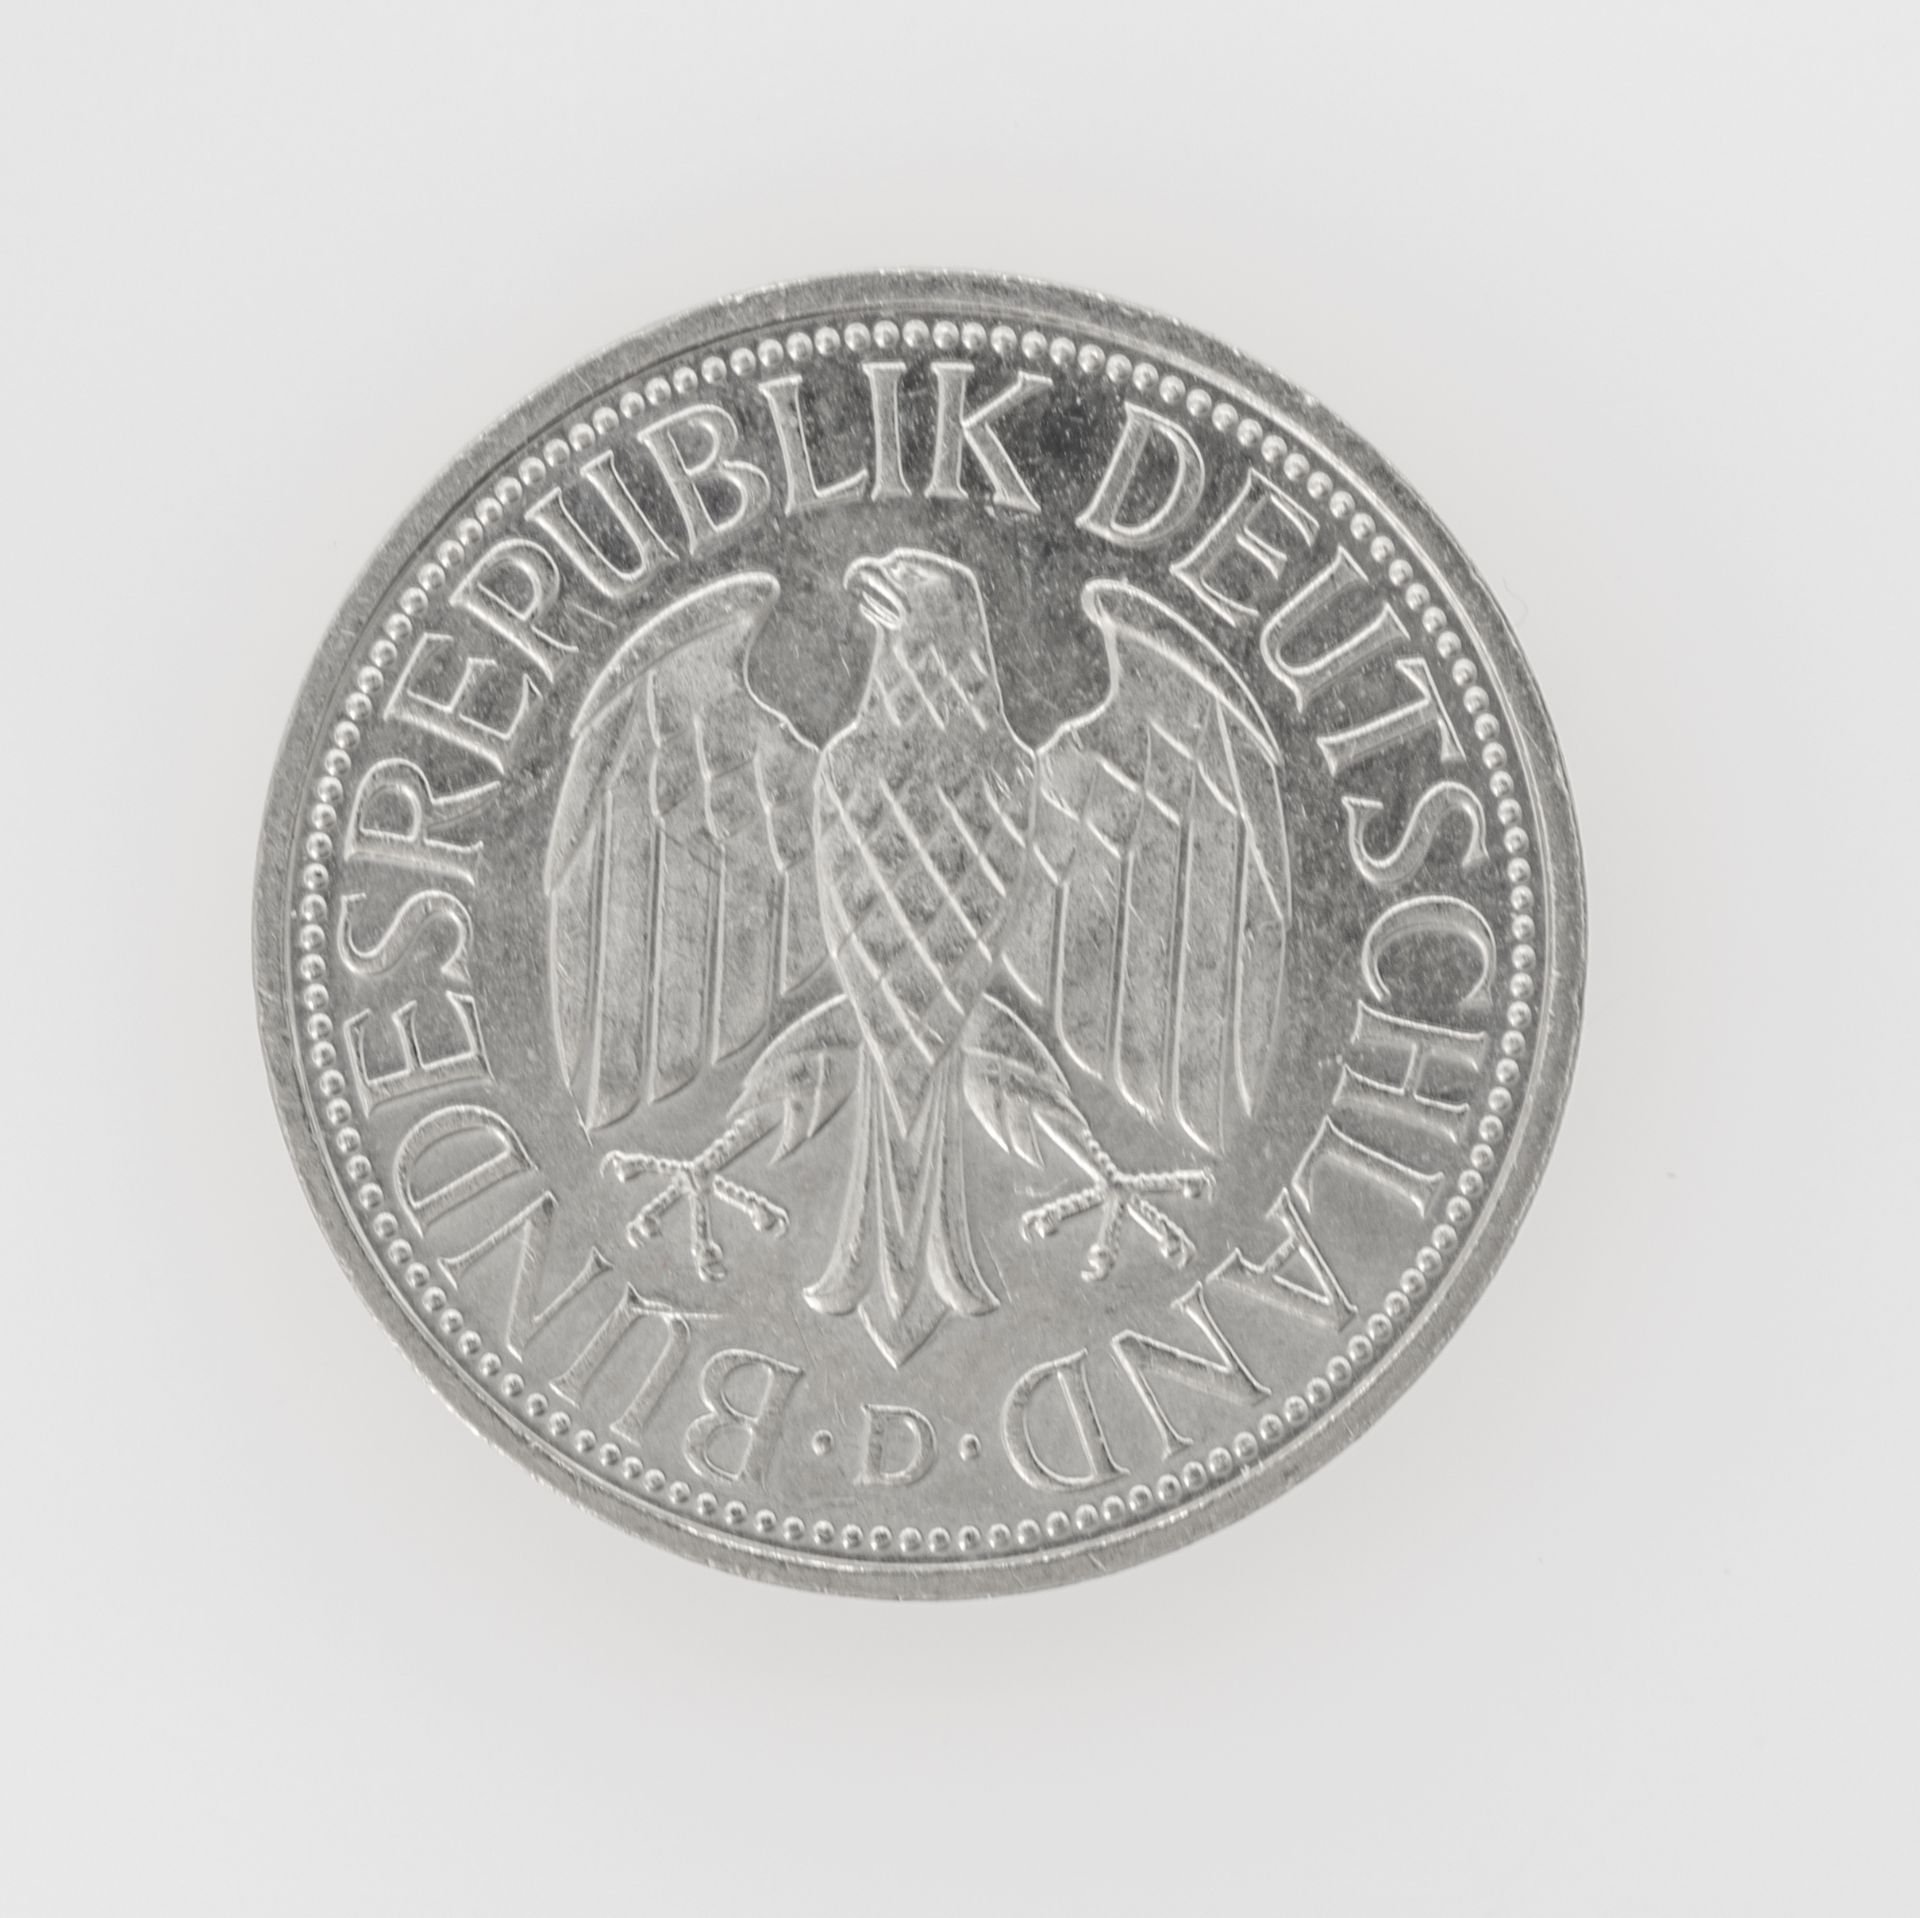 BRD 1994 D, 1 DM - Münze, Fehlprägung: Rand sehr schwach geprägt. - Image 2 of 3